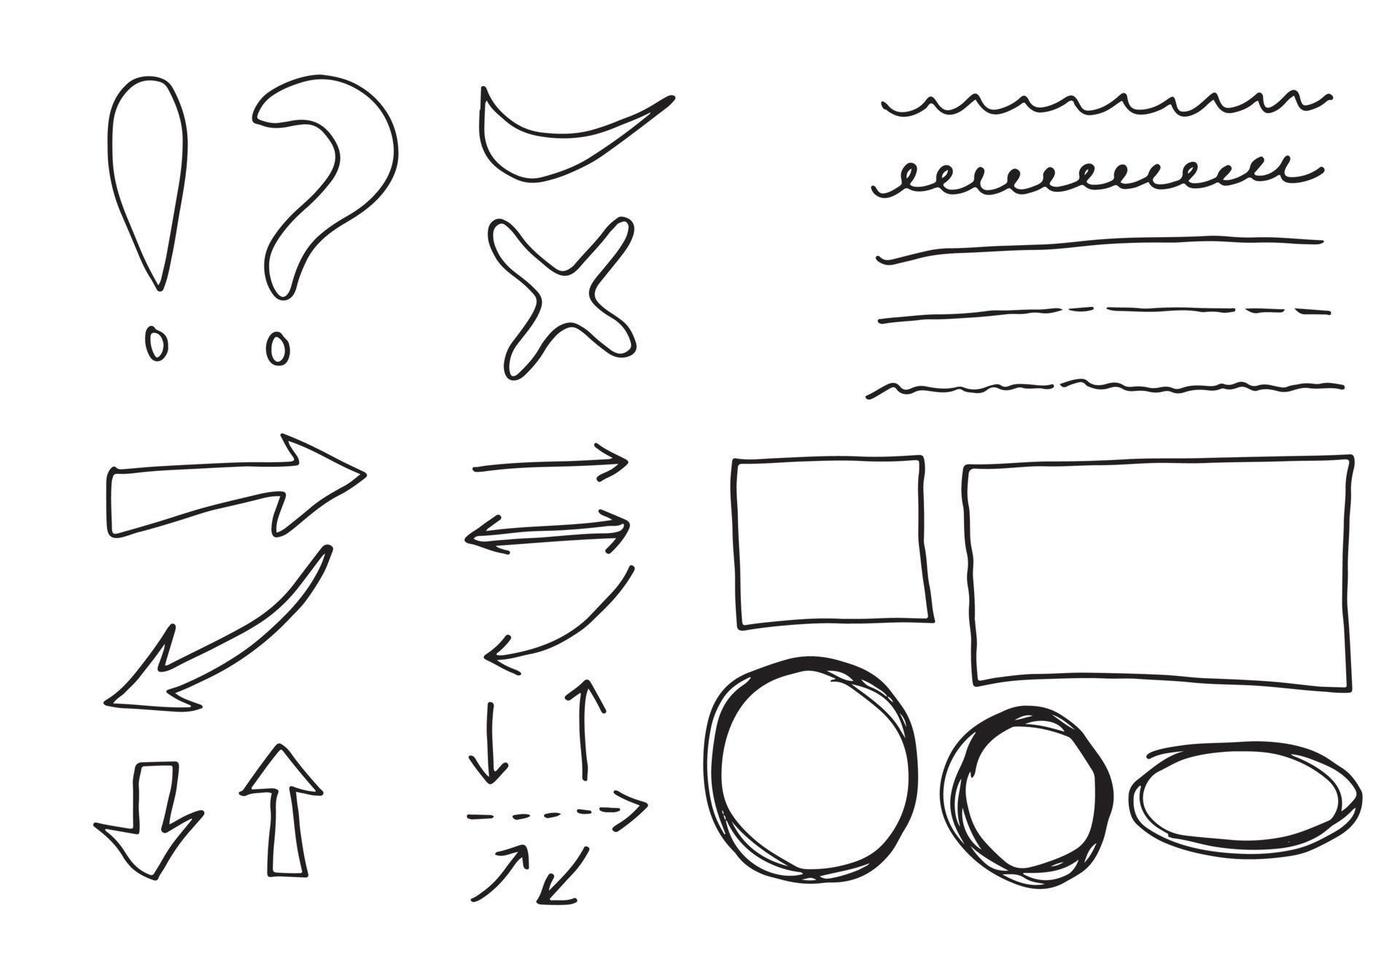 doodle vektor linjer och curves.hand dras check och pilar tecken. uppsättning enkla doodle linjer, kurvor, ramar och fläckar. samling av penneffekter. doodle gränsen. enkel doodle set.